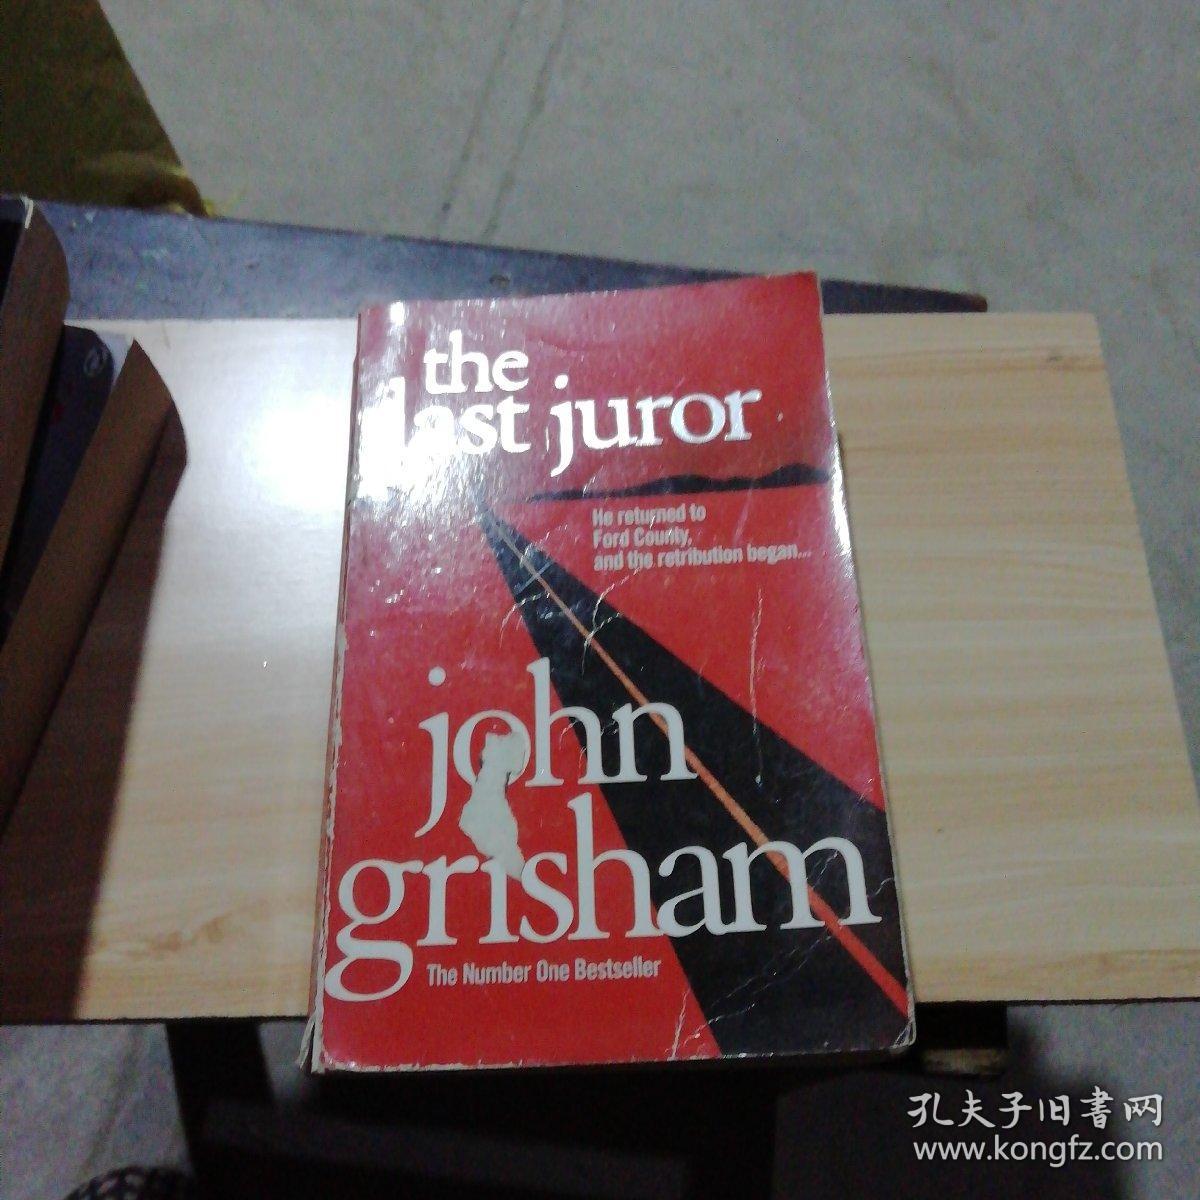 the Last juror